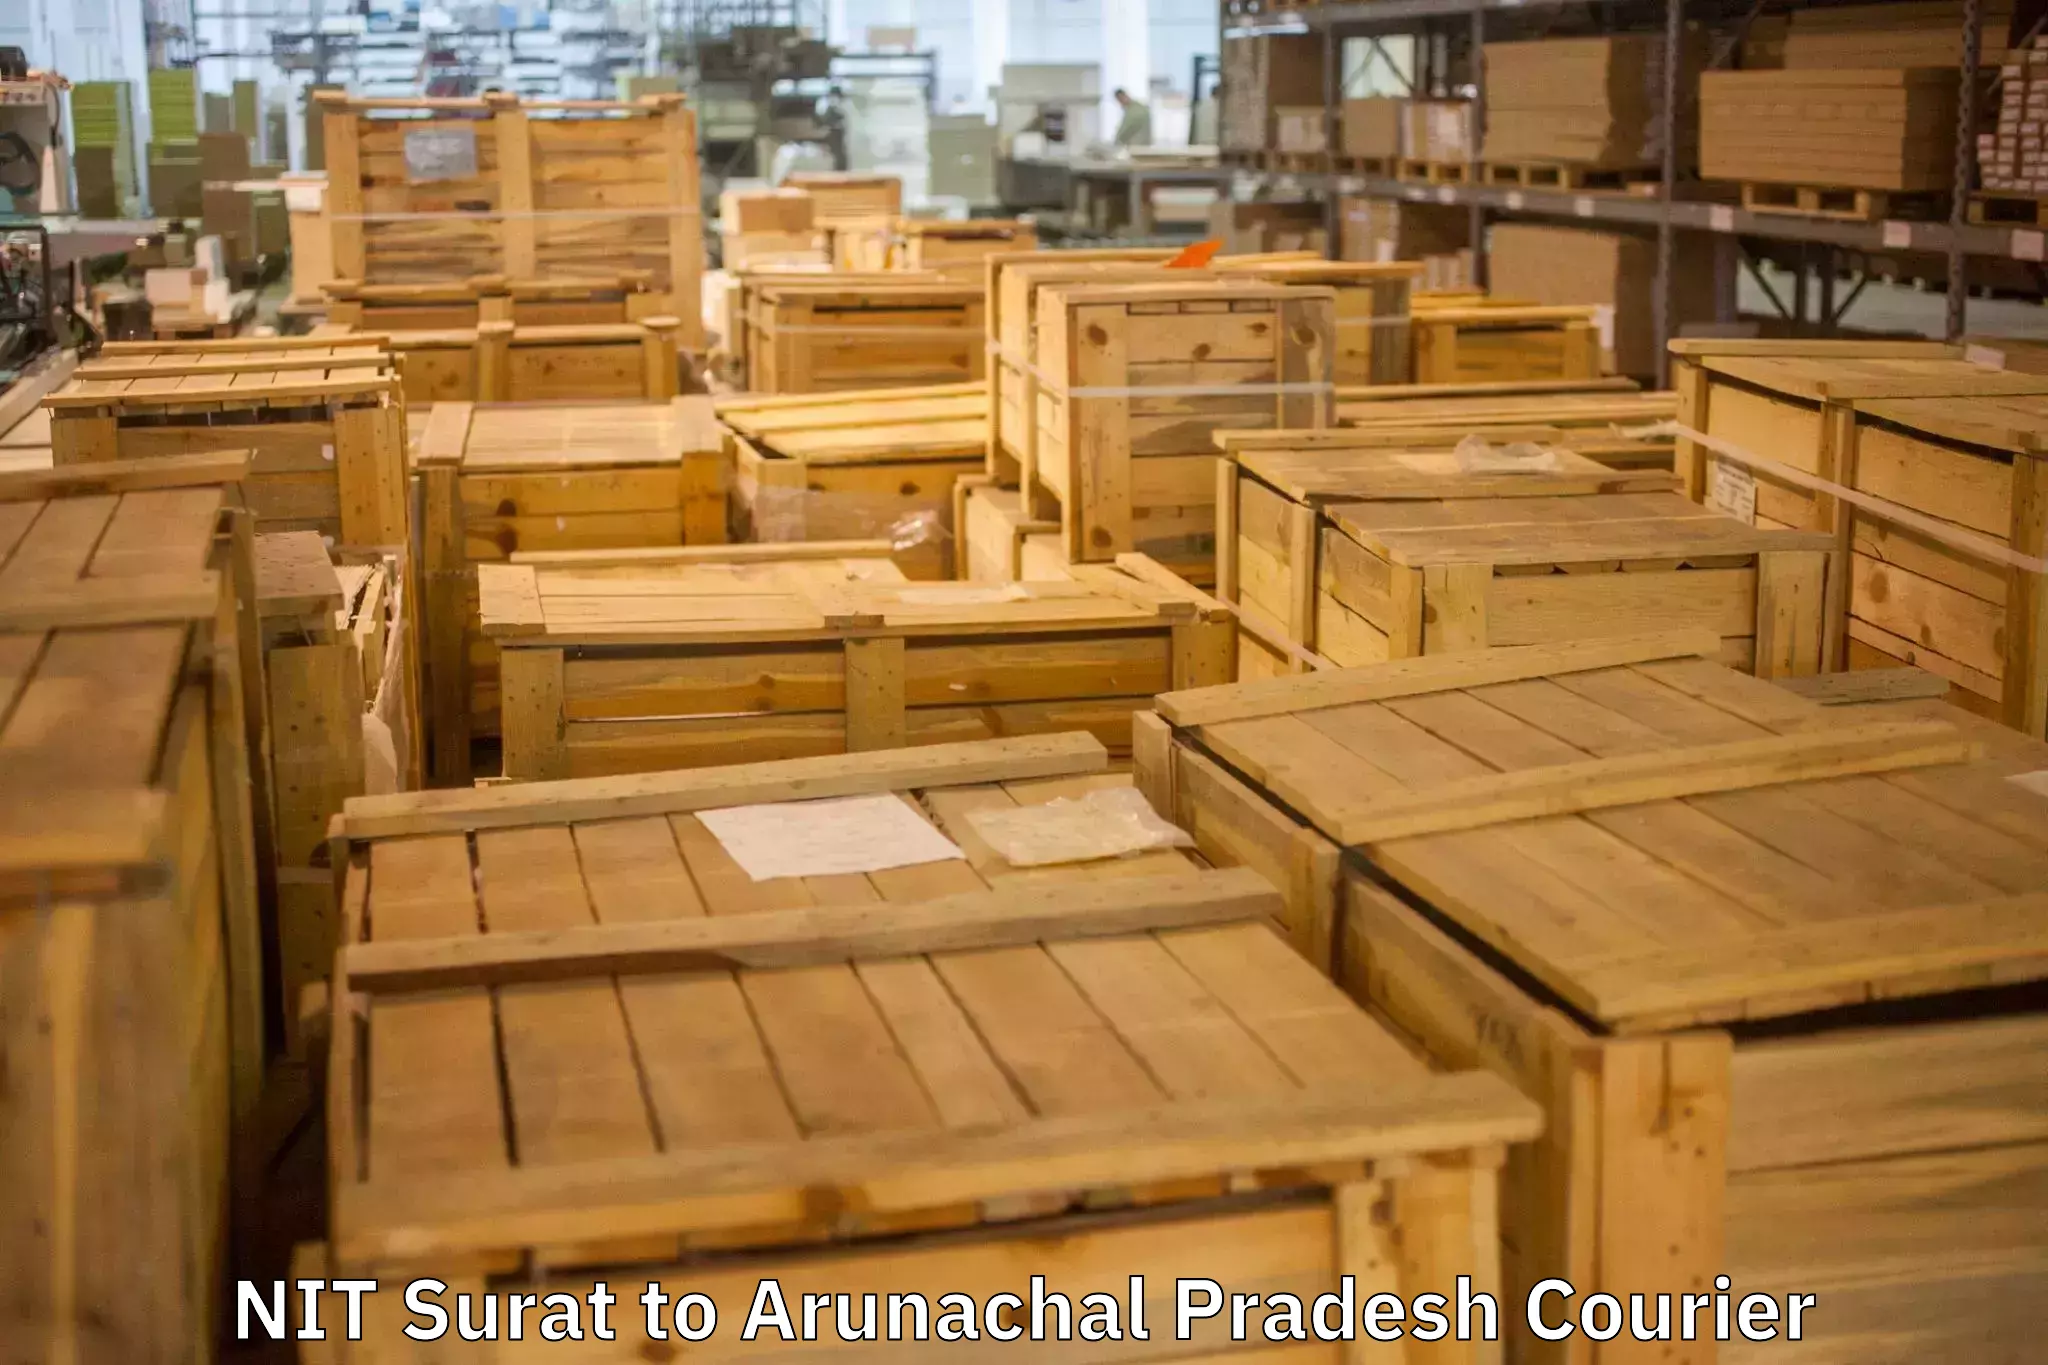 Expert packing and moving NIT Surat to Arunachal Pradesh